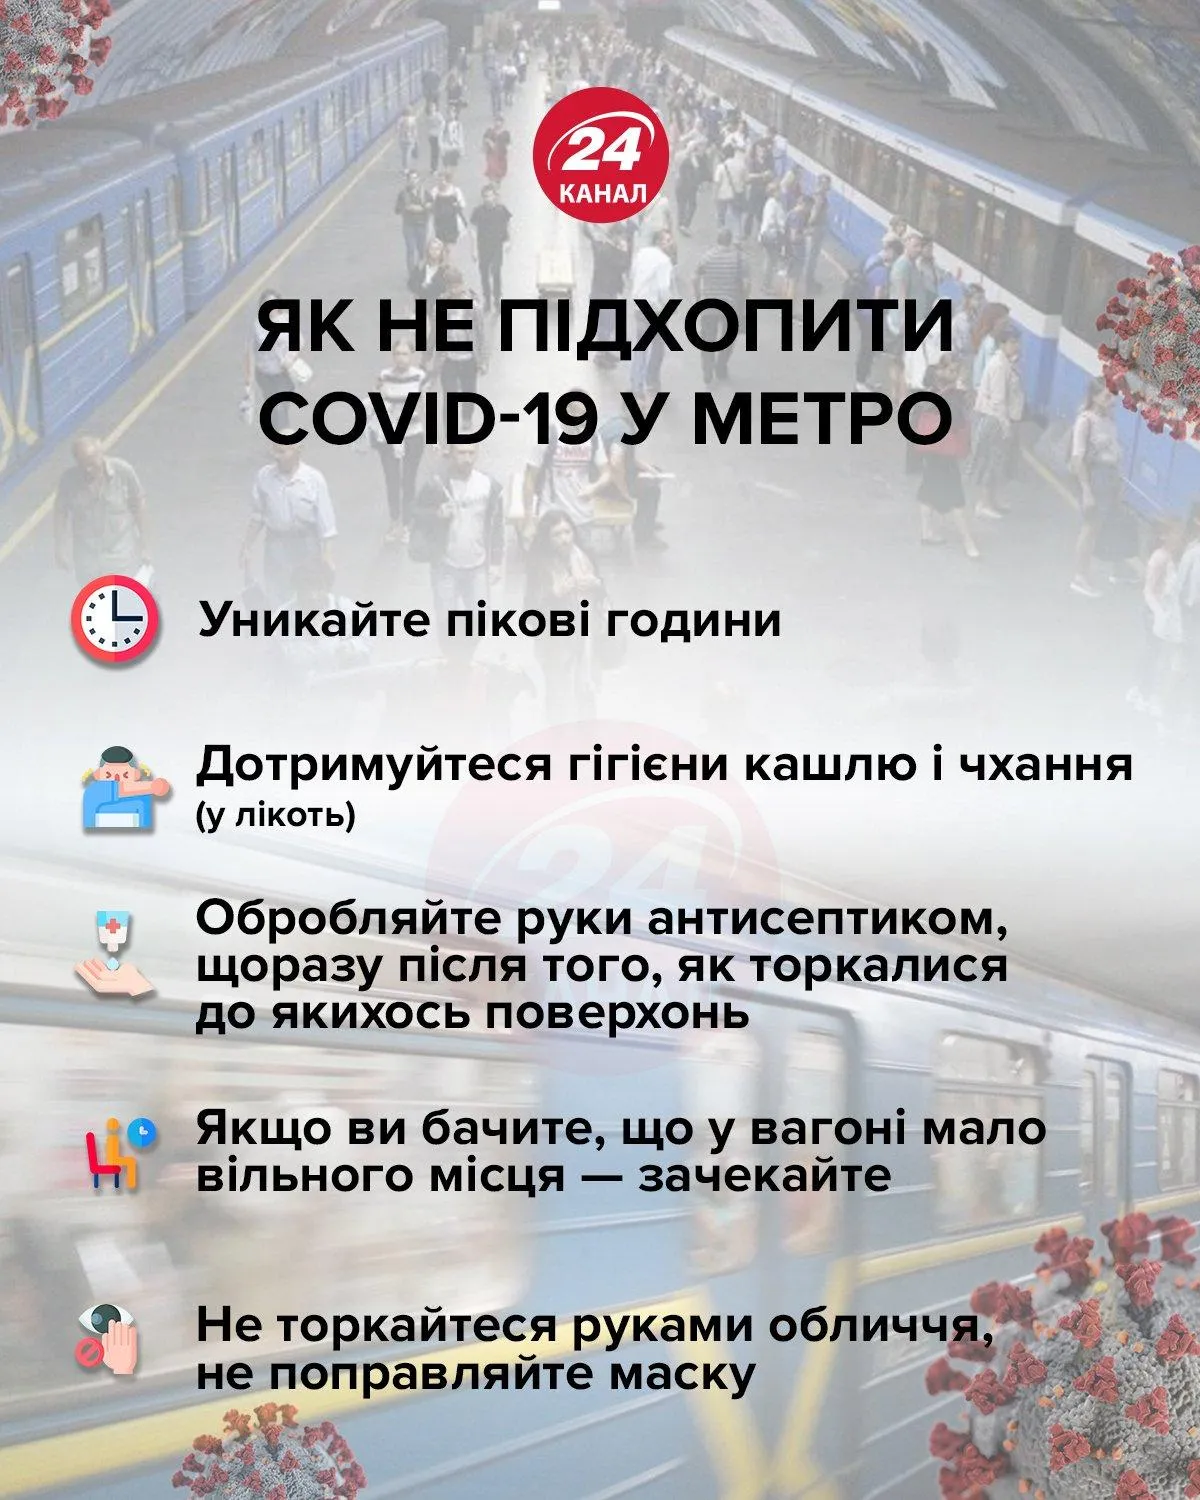 Коронавирус в Киеве, локдаун, как не заразиться в метро